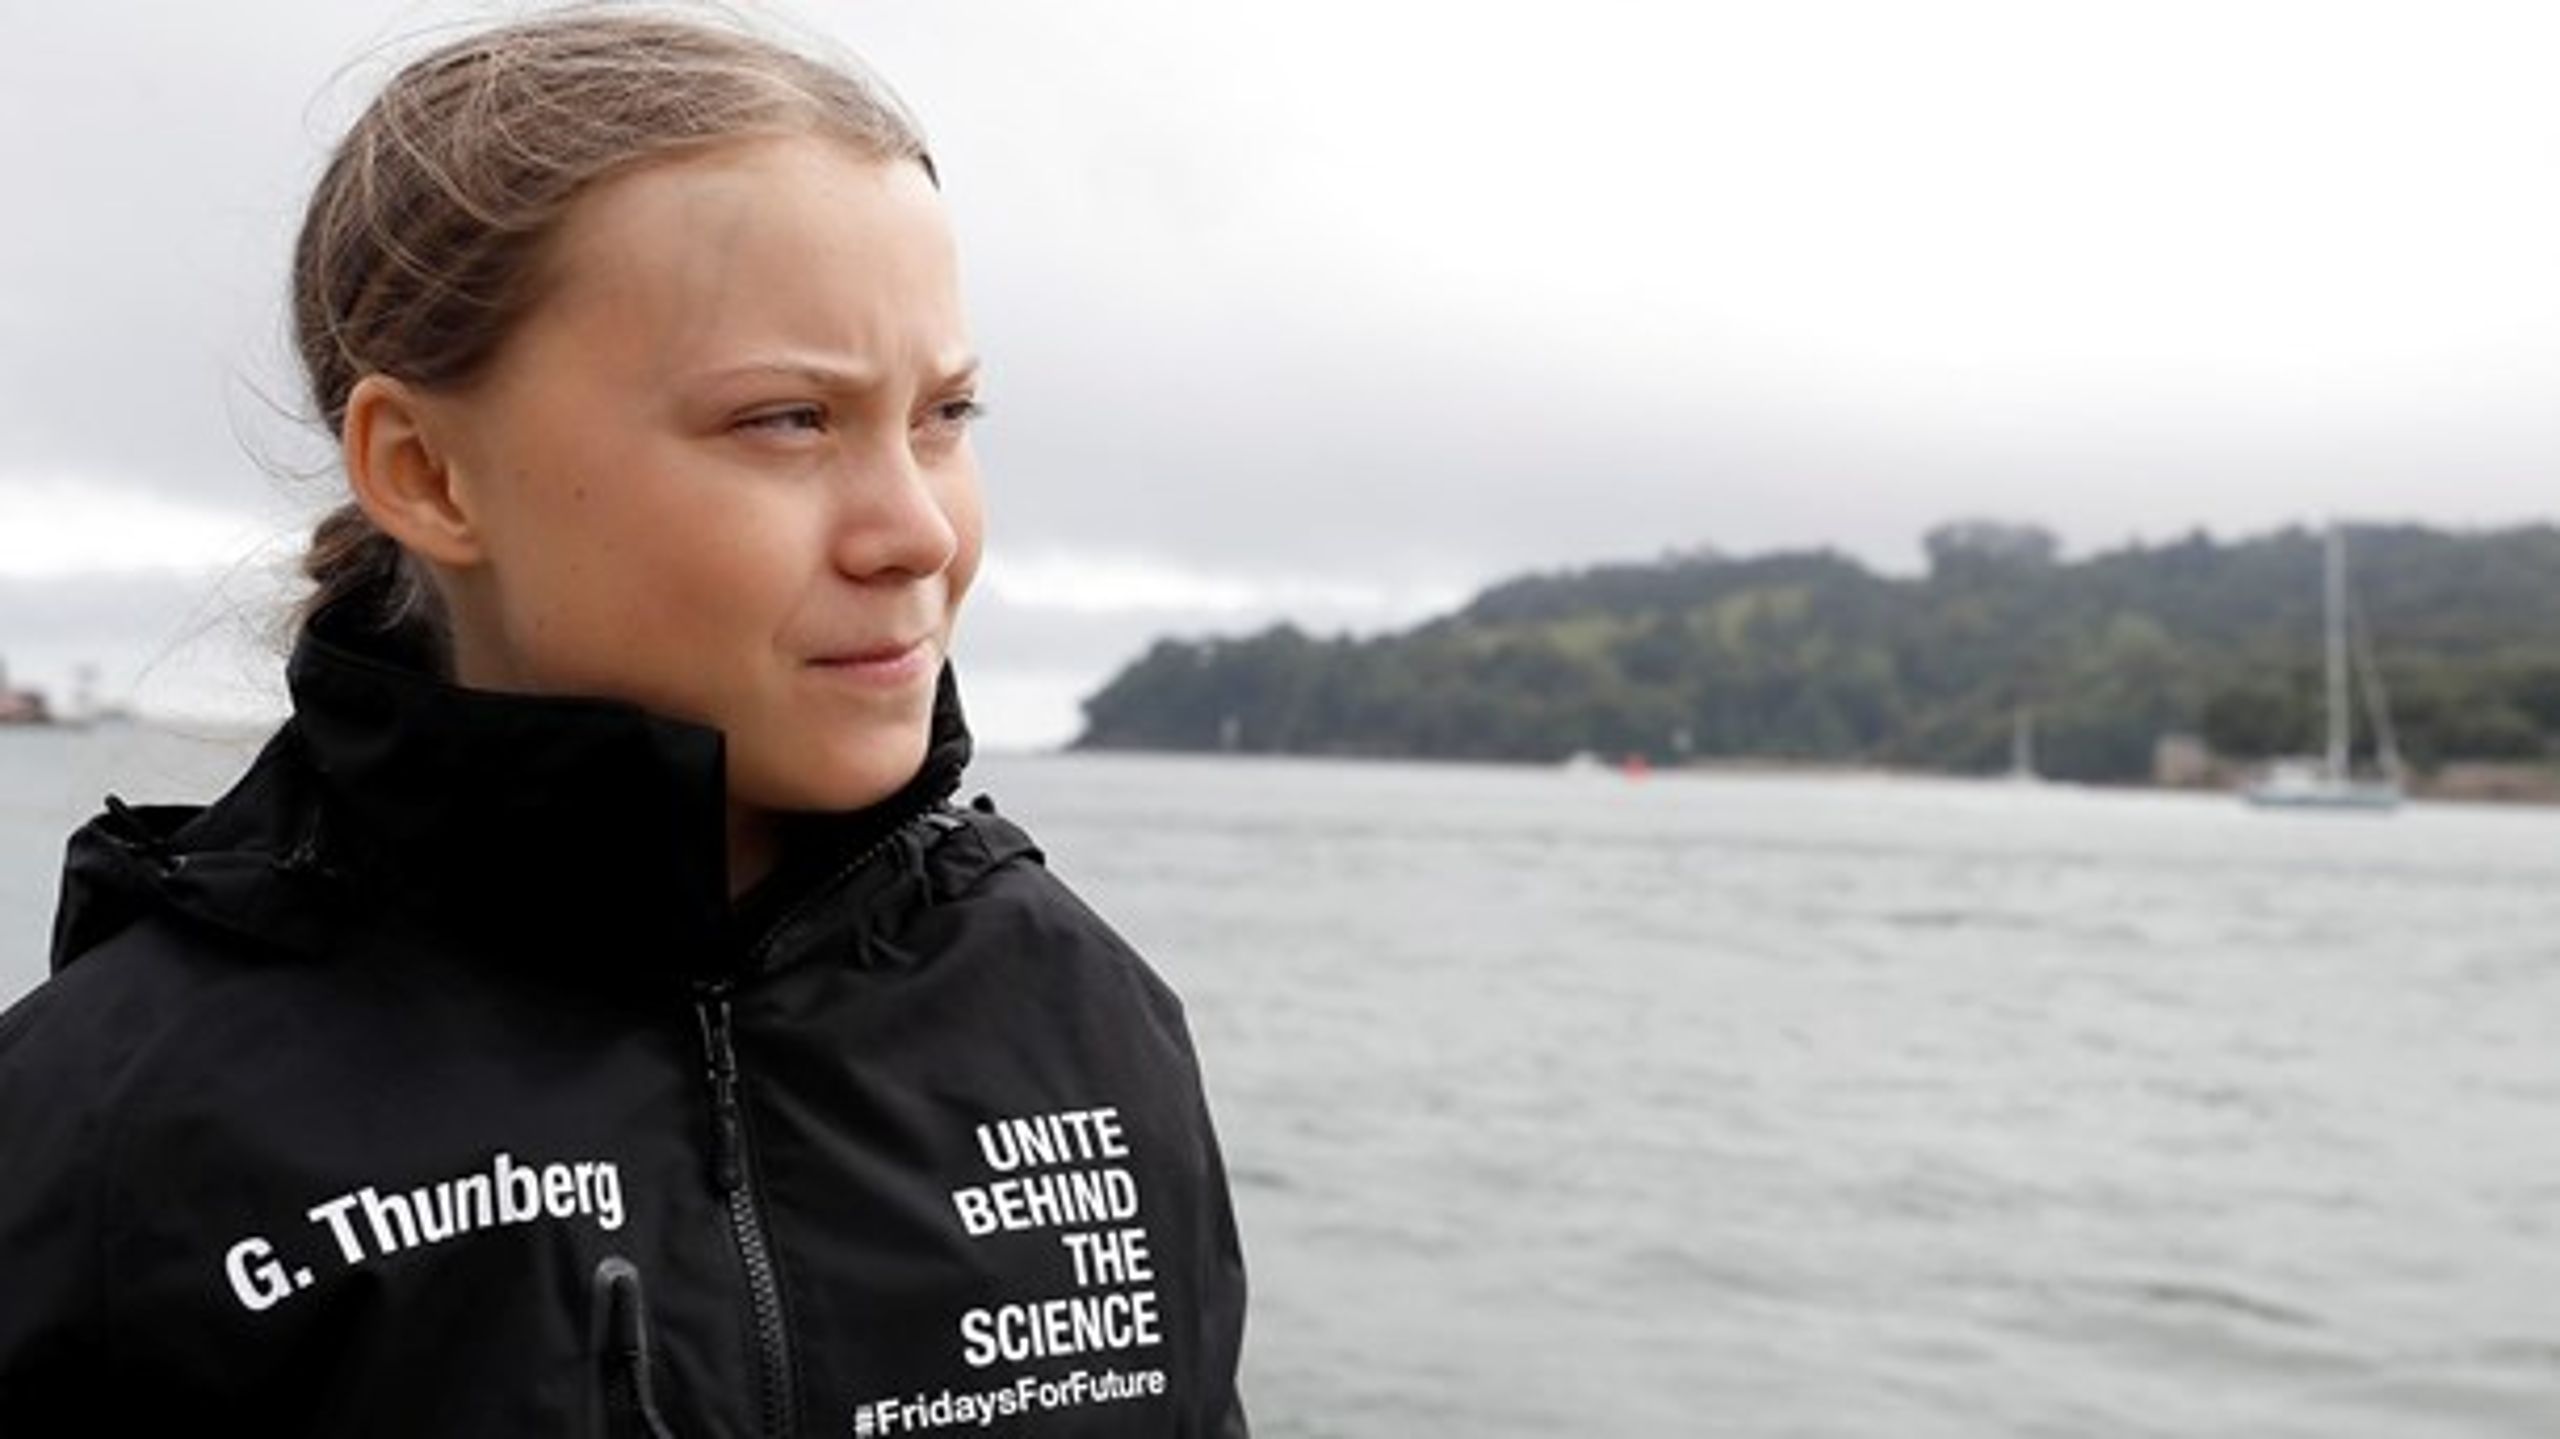 Voksenverdenen kan godt leve op til sit ansvar uden at blive belært af en ungt, som stadig bor hjemme hos mor og far, skriver Adam Holm om klimaaktivisten Greta Thunberg.